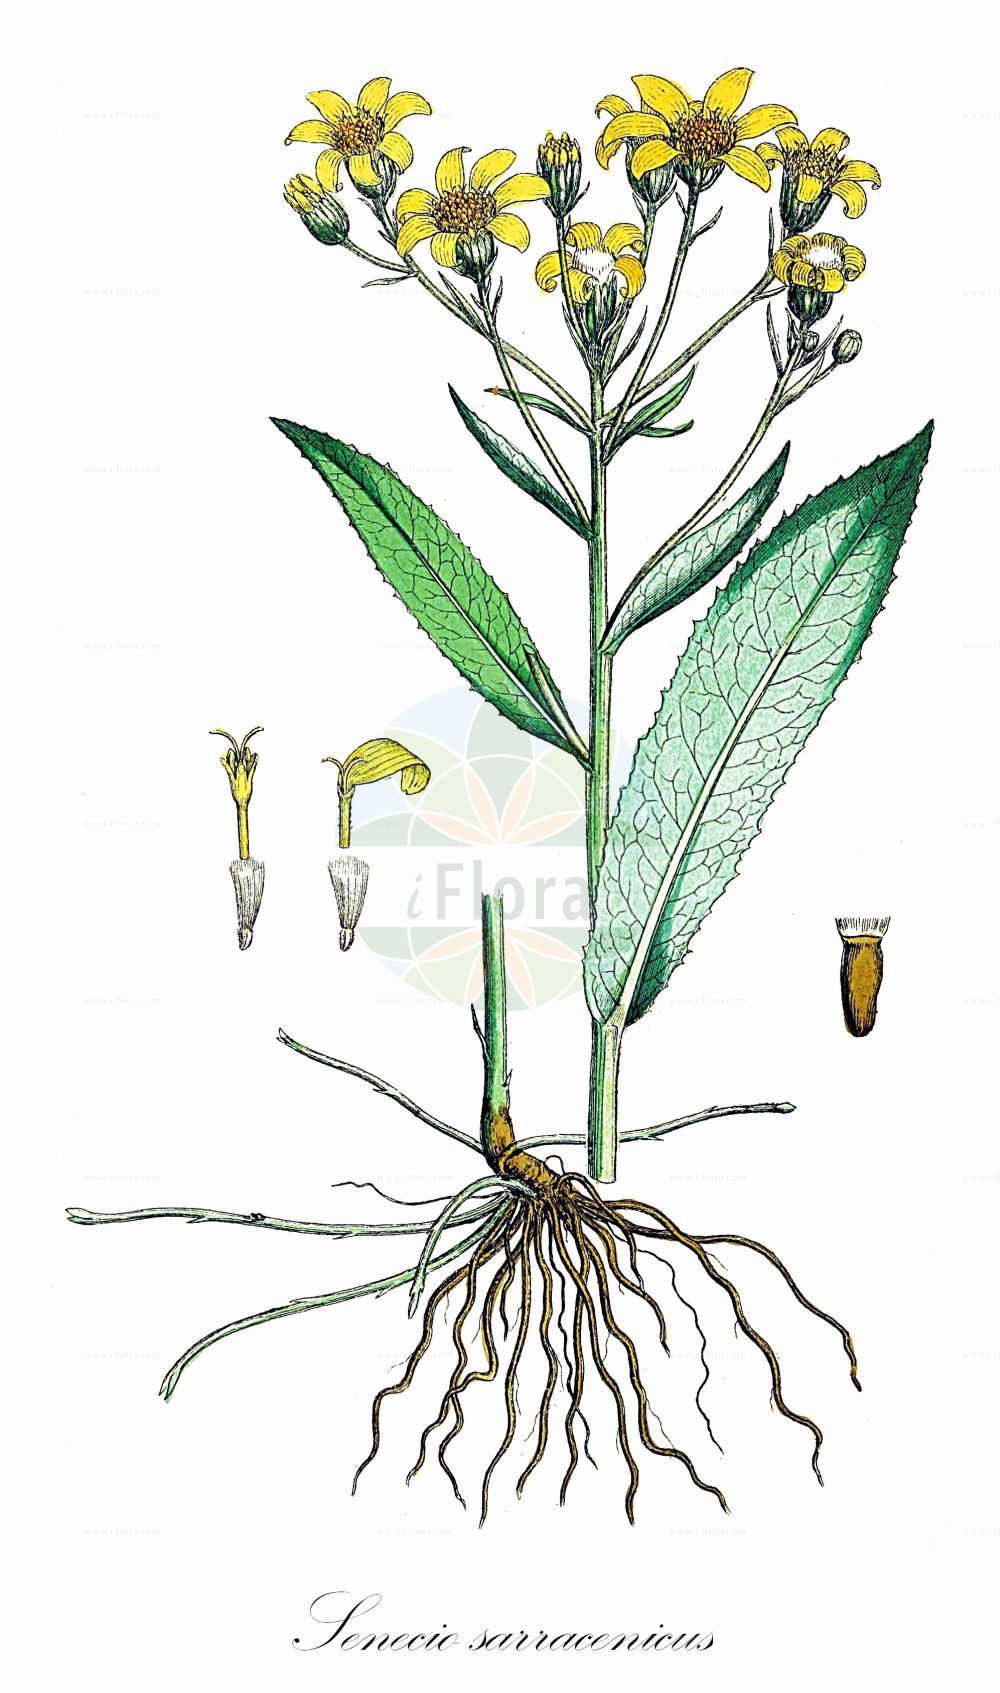 Historische Abbildung von Senecio sarracenicus (Fluß-Greiskraut - Broad-leaved Ragwort). Das Bild zeigt Blatt, Bluete, Frucht und Same. ---- Historical Drawing of Senecio sarracenicus (Fluß-Greiskraut - Broad-leaved Ragwort). The image is showing leaf, flower, fruit and seed.(Senecio sarracenicus,Fluß-Greiskraut,Broad-leaved Ragwort,Senecio fluviatilis,Senecio sarracenicus,Fluss-Greiskraut,Broad-leaved Ragwort,Senecio,Greiskraut,Ragwort,Asteraceae,Korbblütengewächse,Daisy family,Blatt,Bluete,Frucht,Same,leaf,flower,fruit,seed,Sowerby (1790-1813))